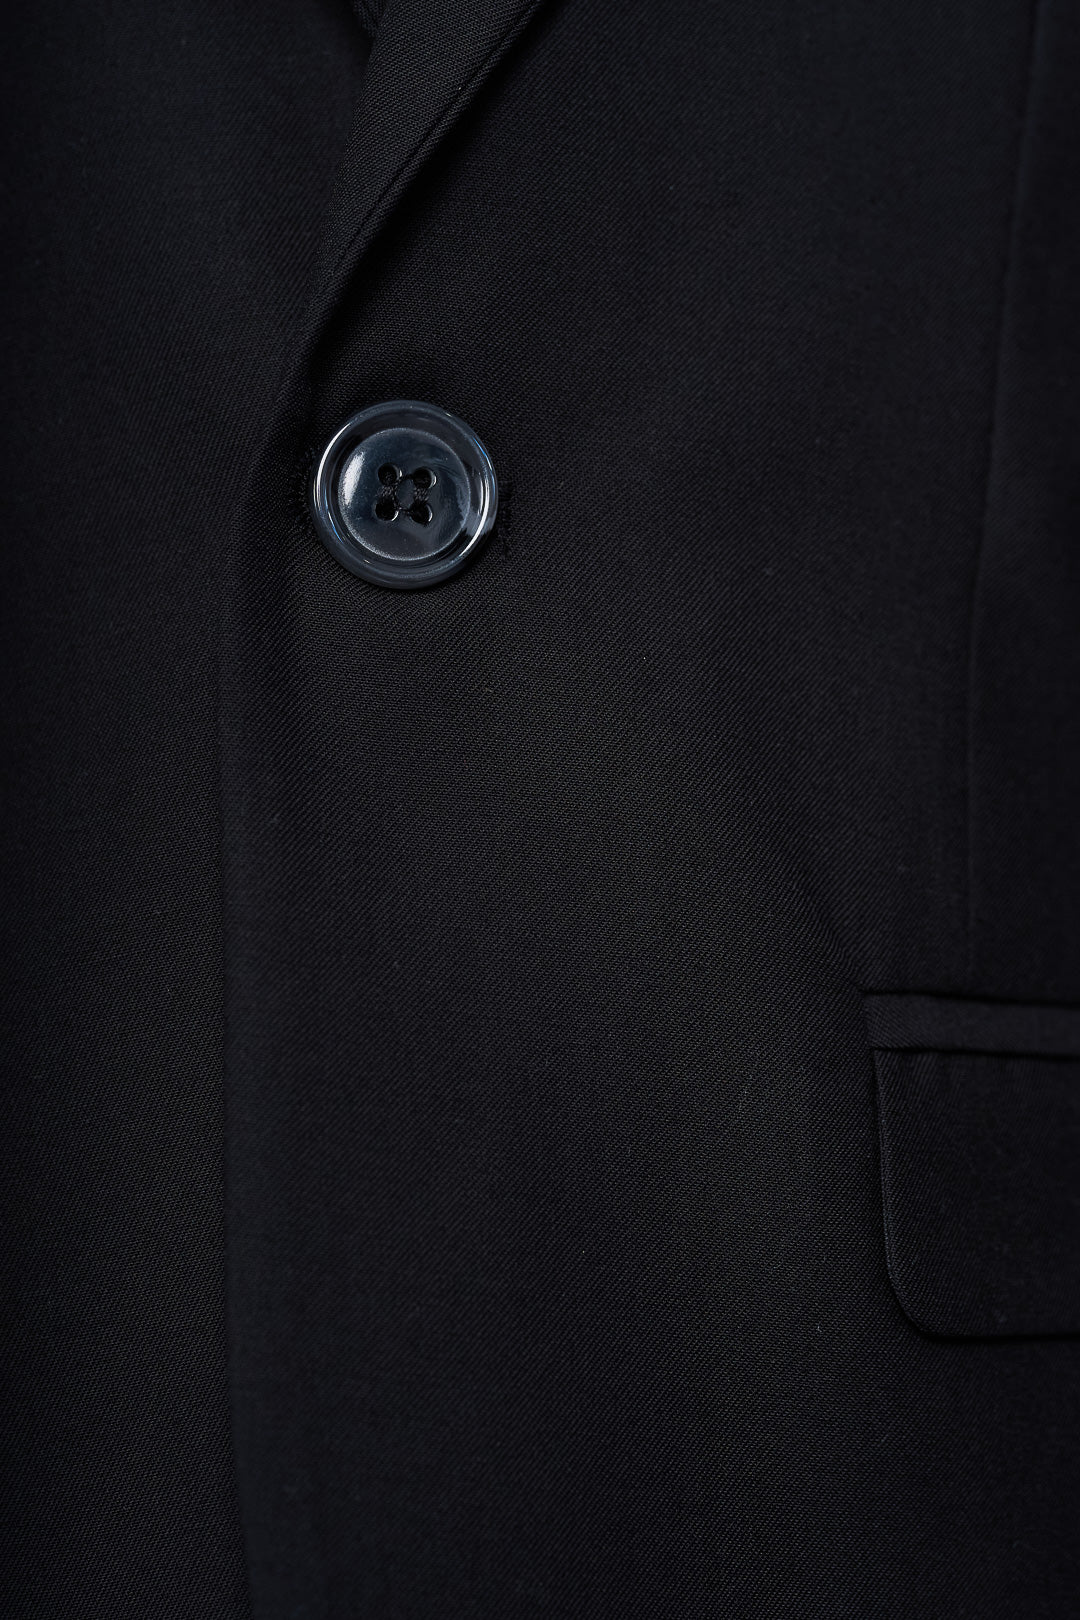 Plain Black Suit